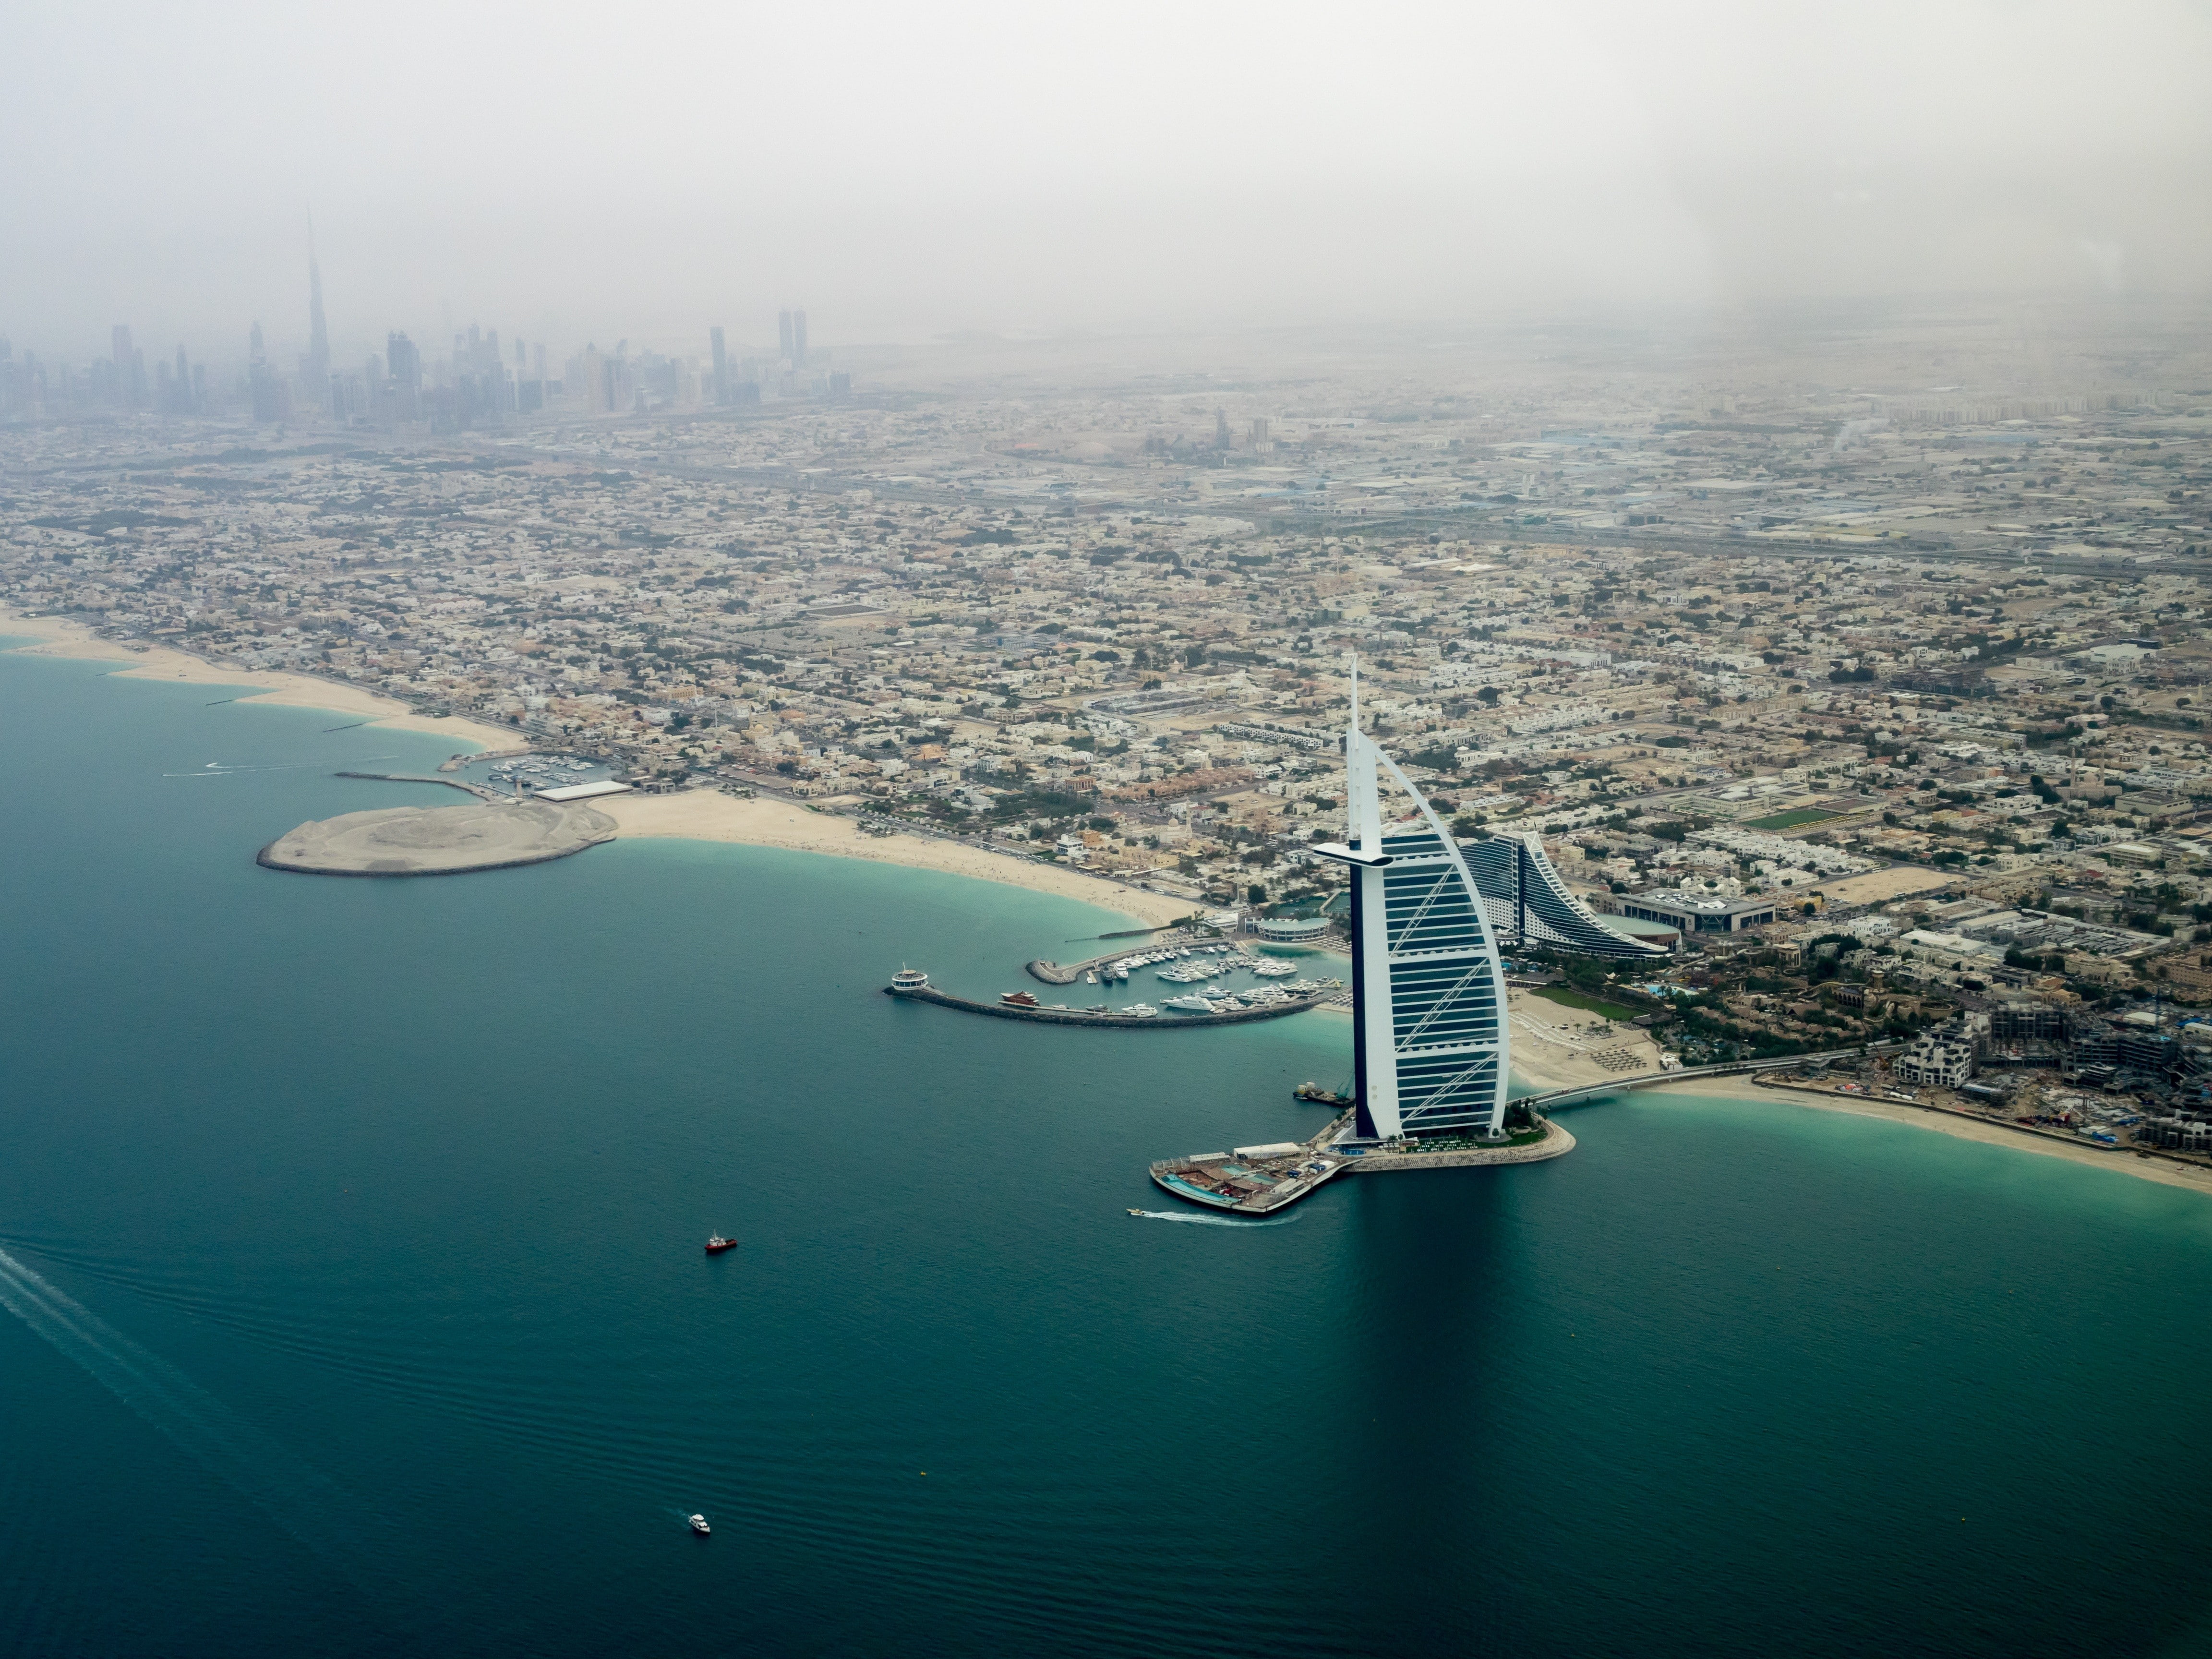 cityscape, sea, helicopter view, shore, building, Burj Al Arab